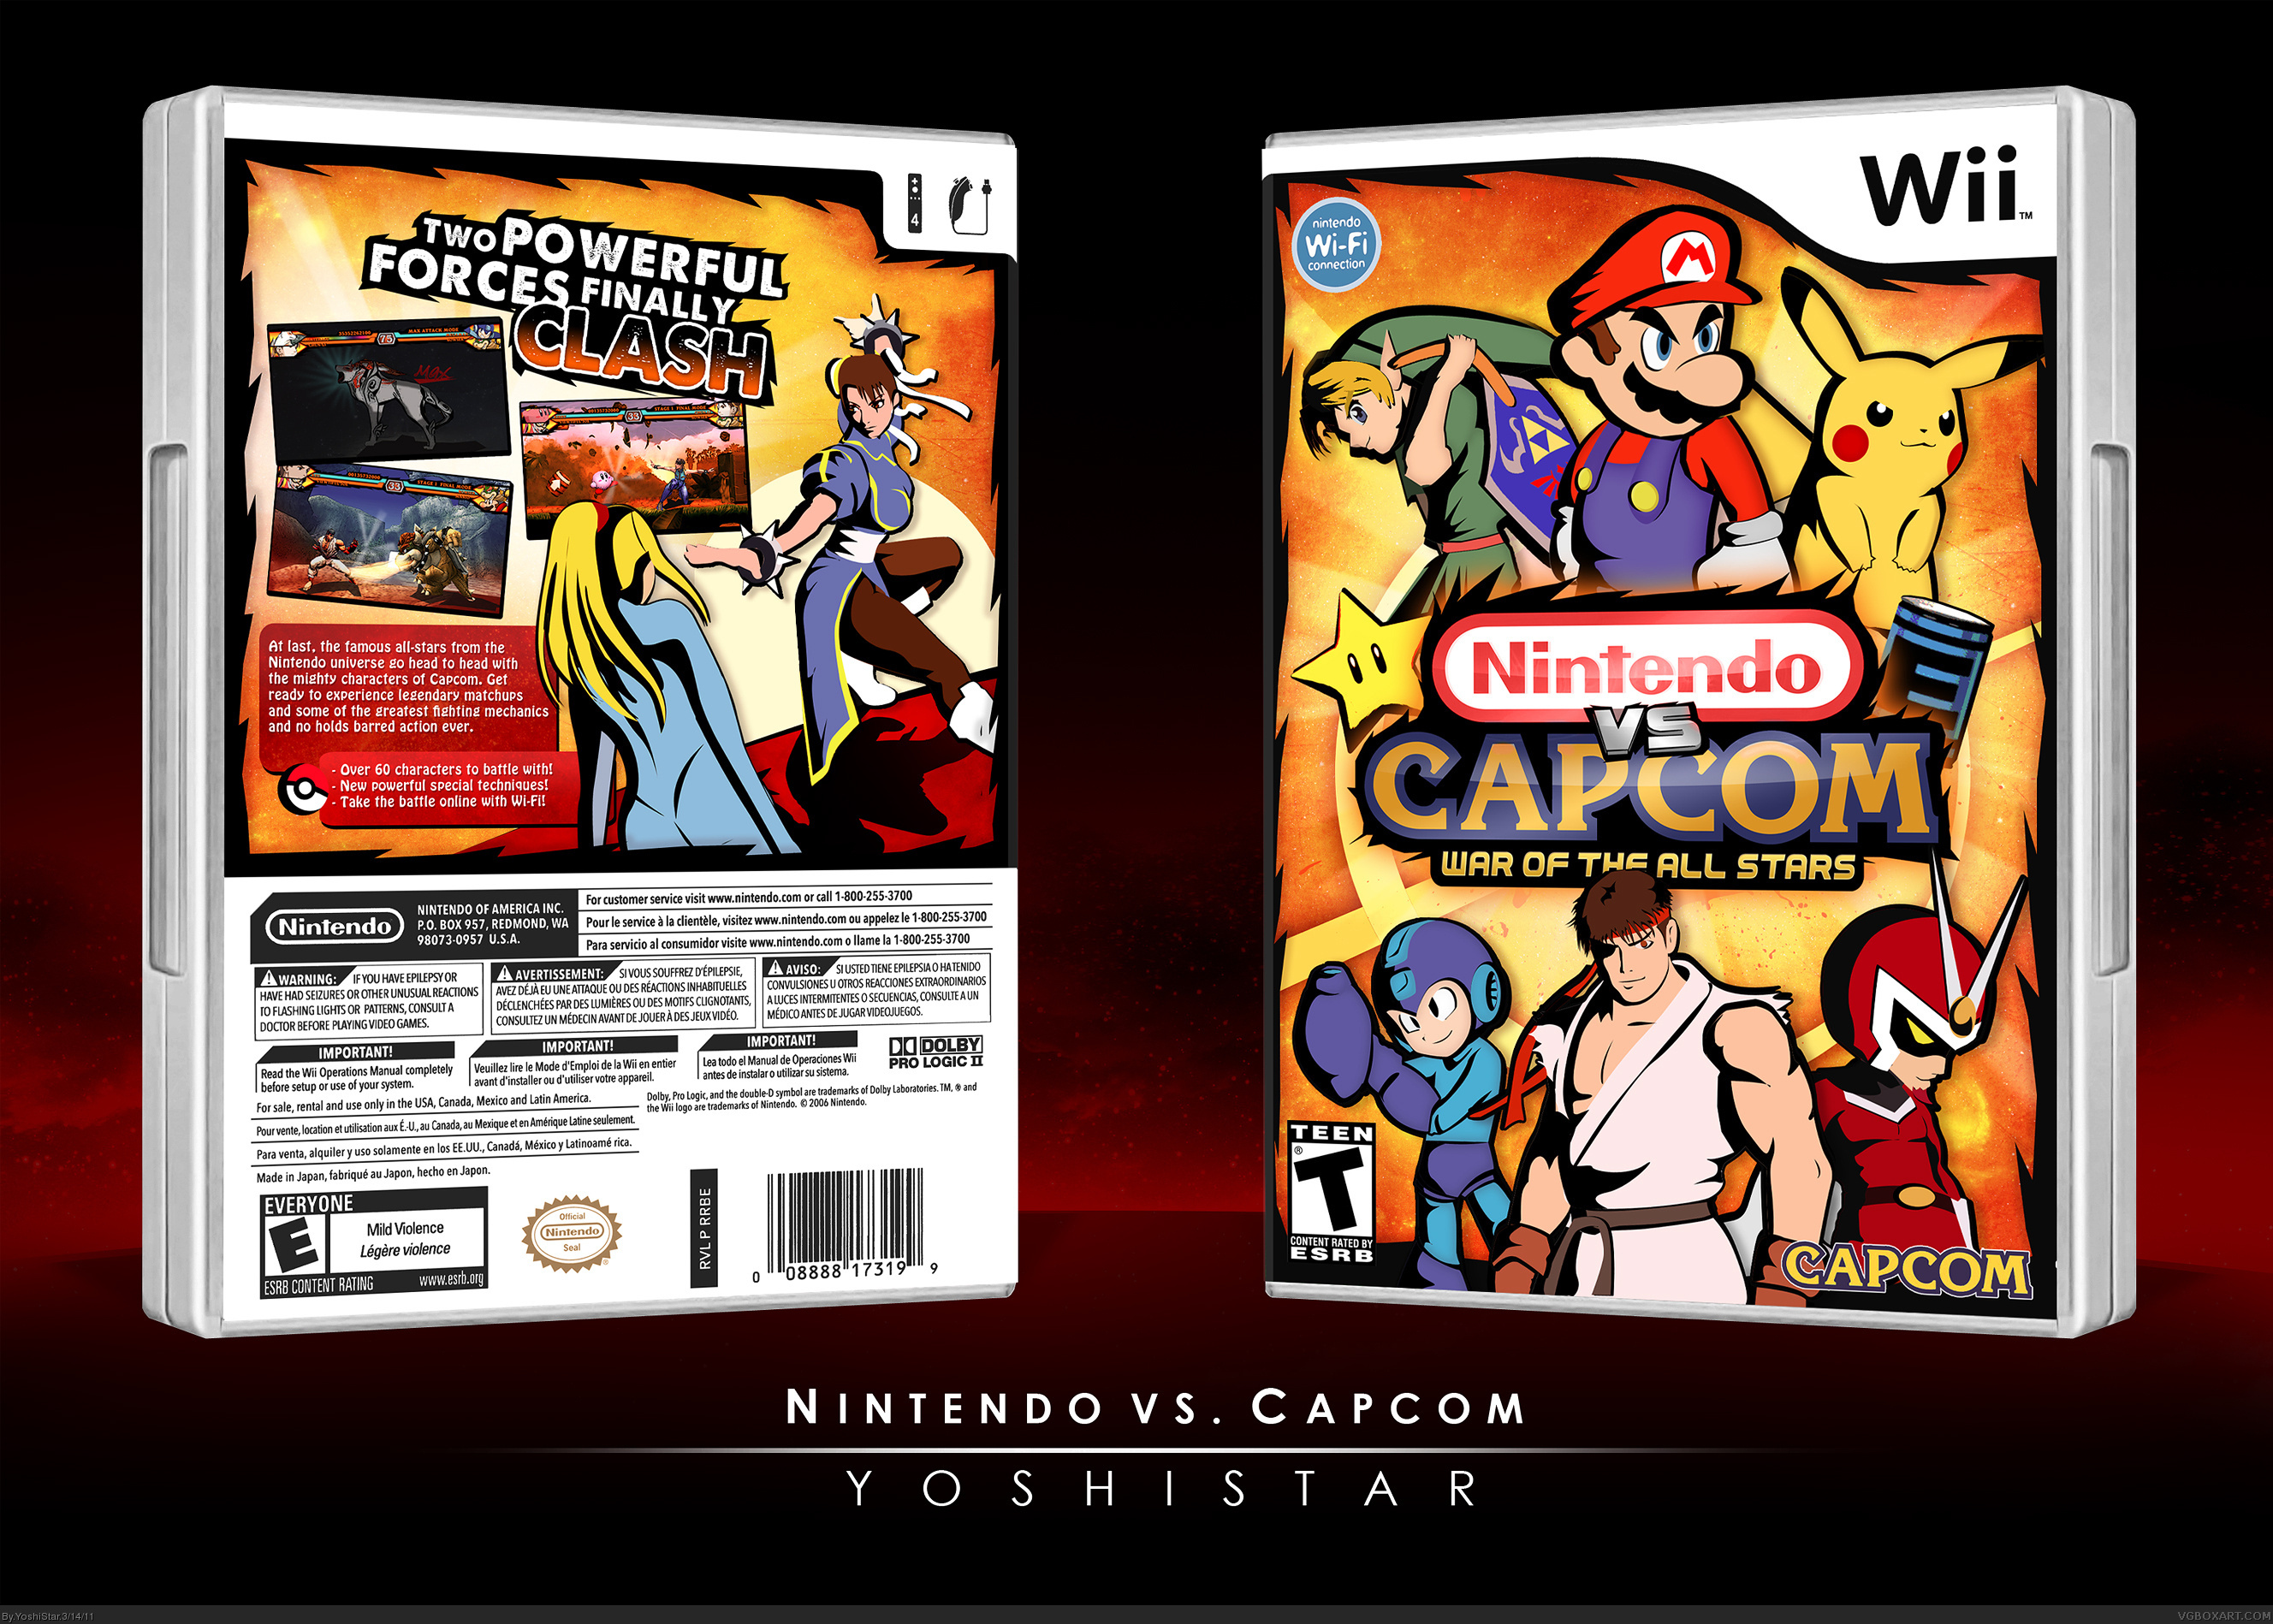 Nintendo vs. Capcom box cover